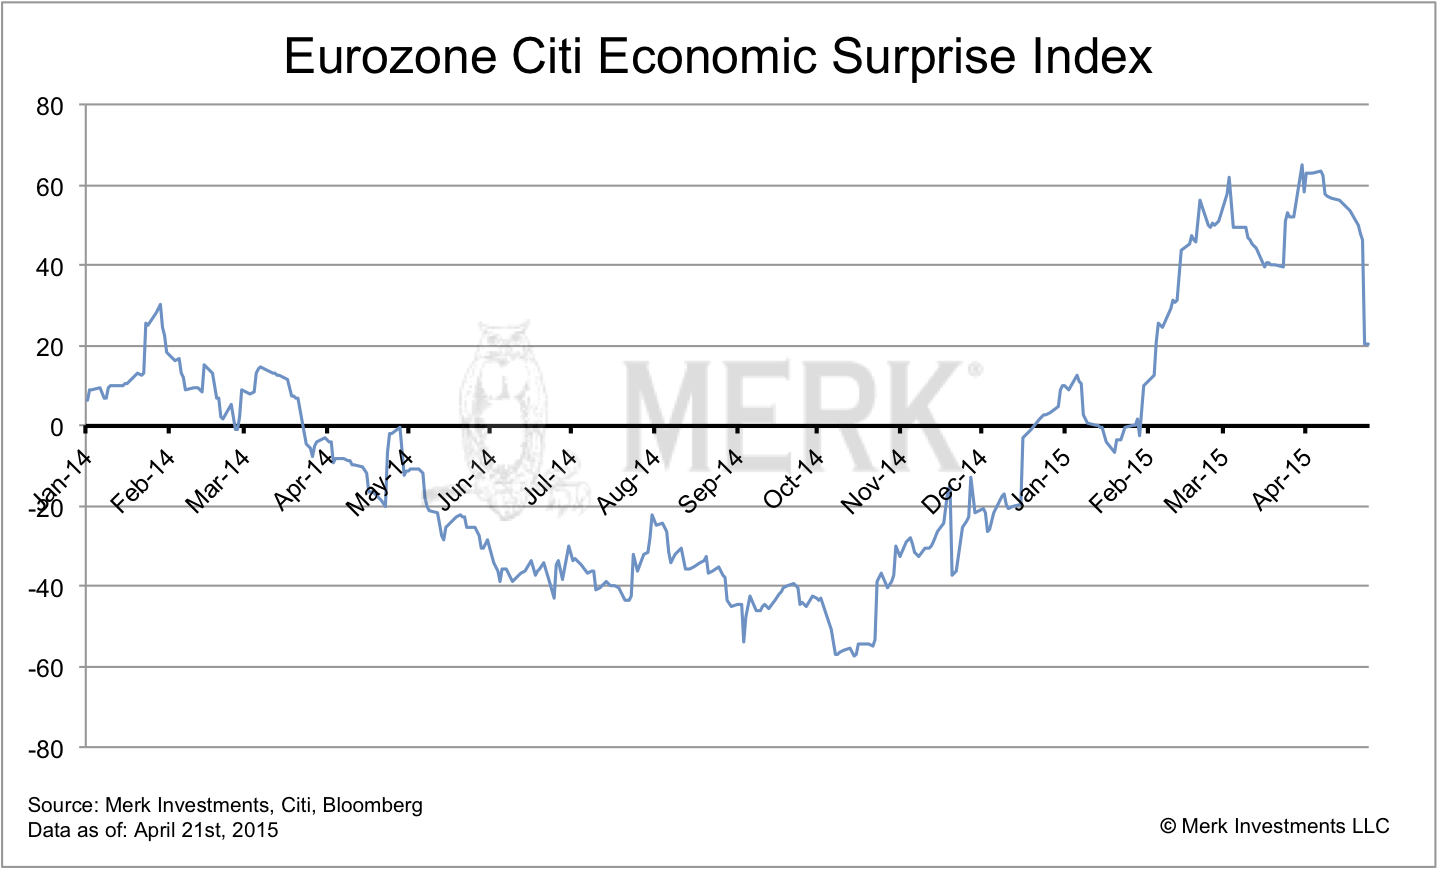 Citi Economic Surprise Index: Eurozone